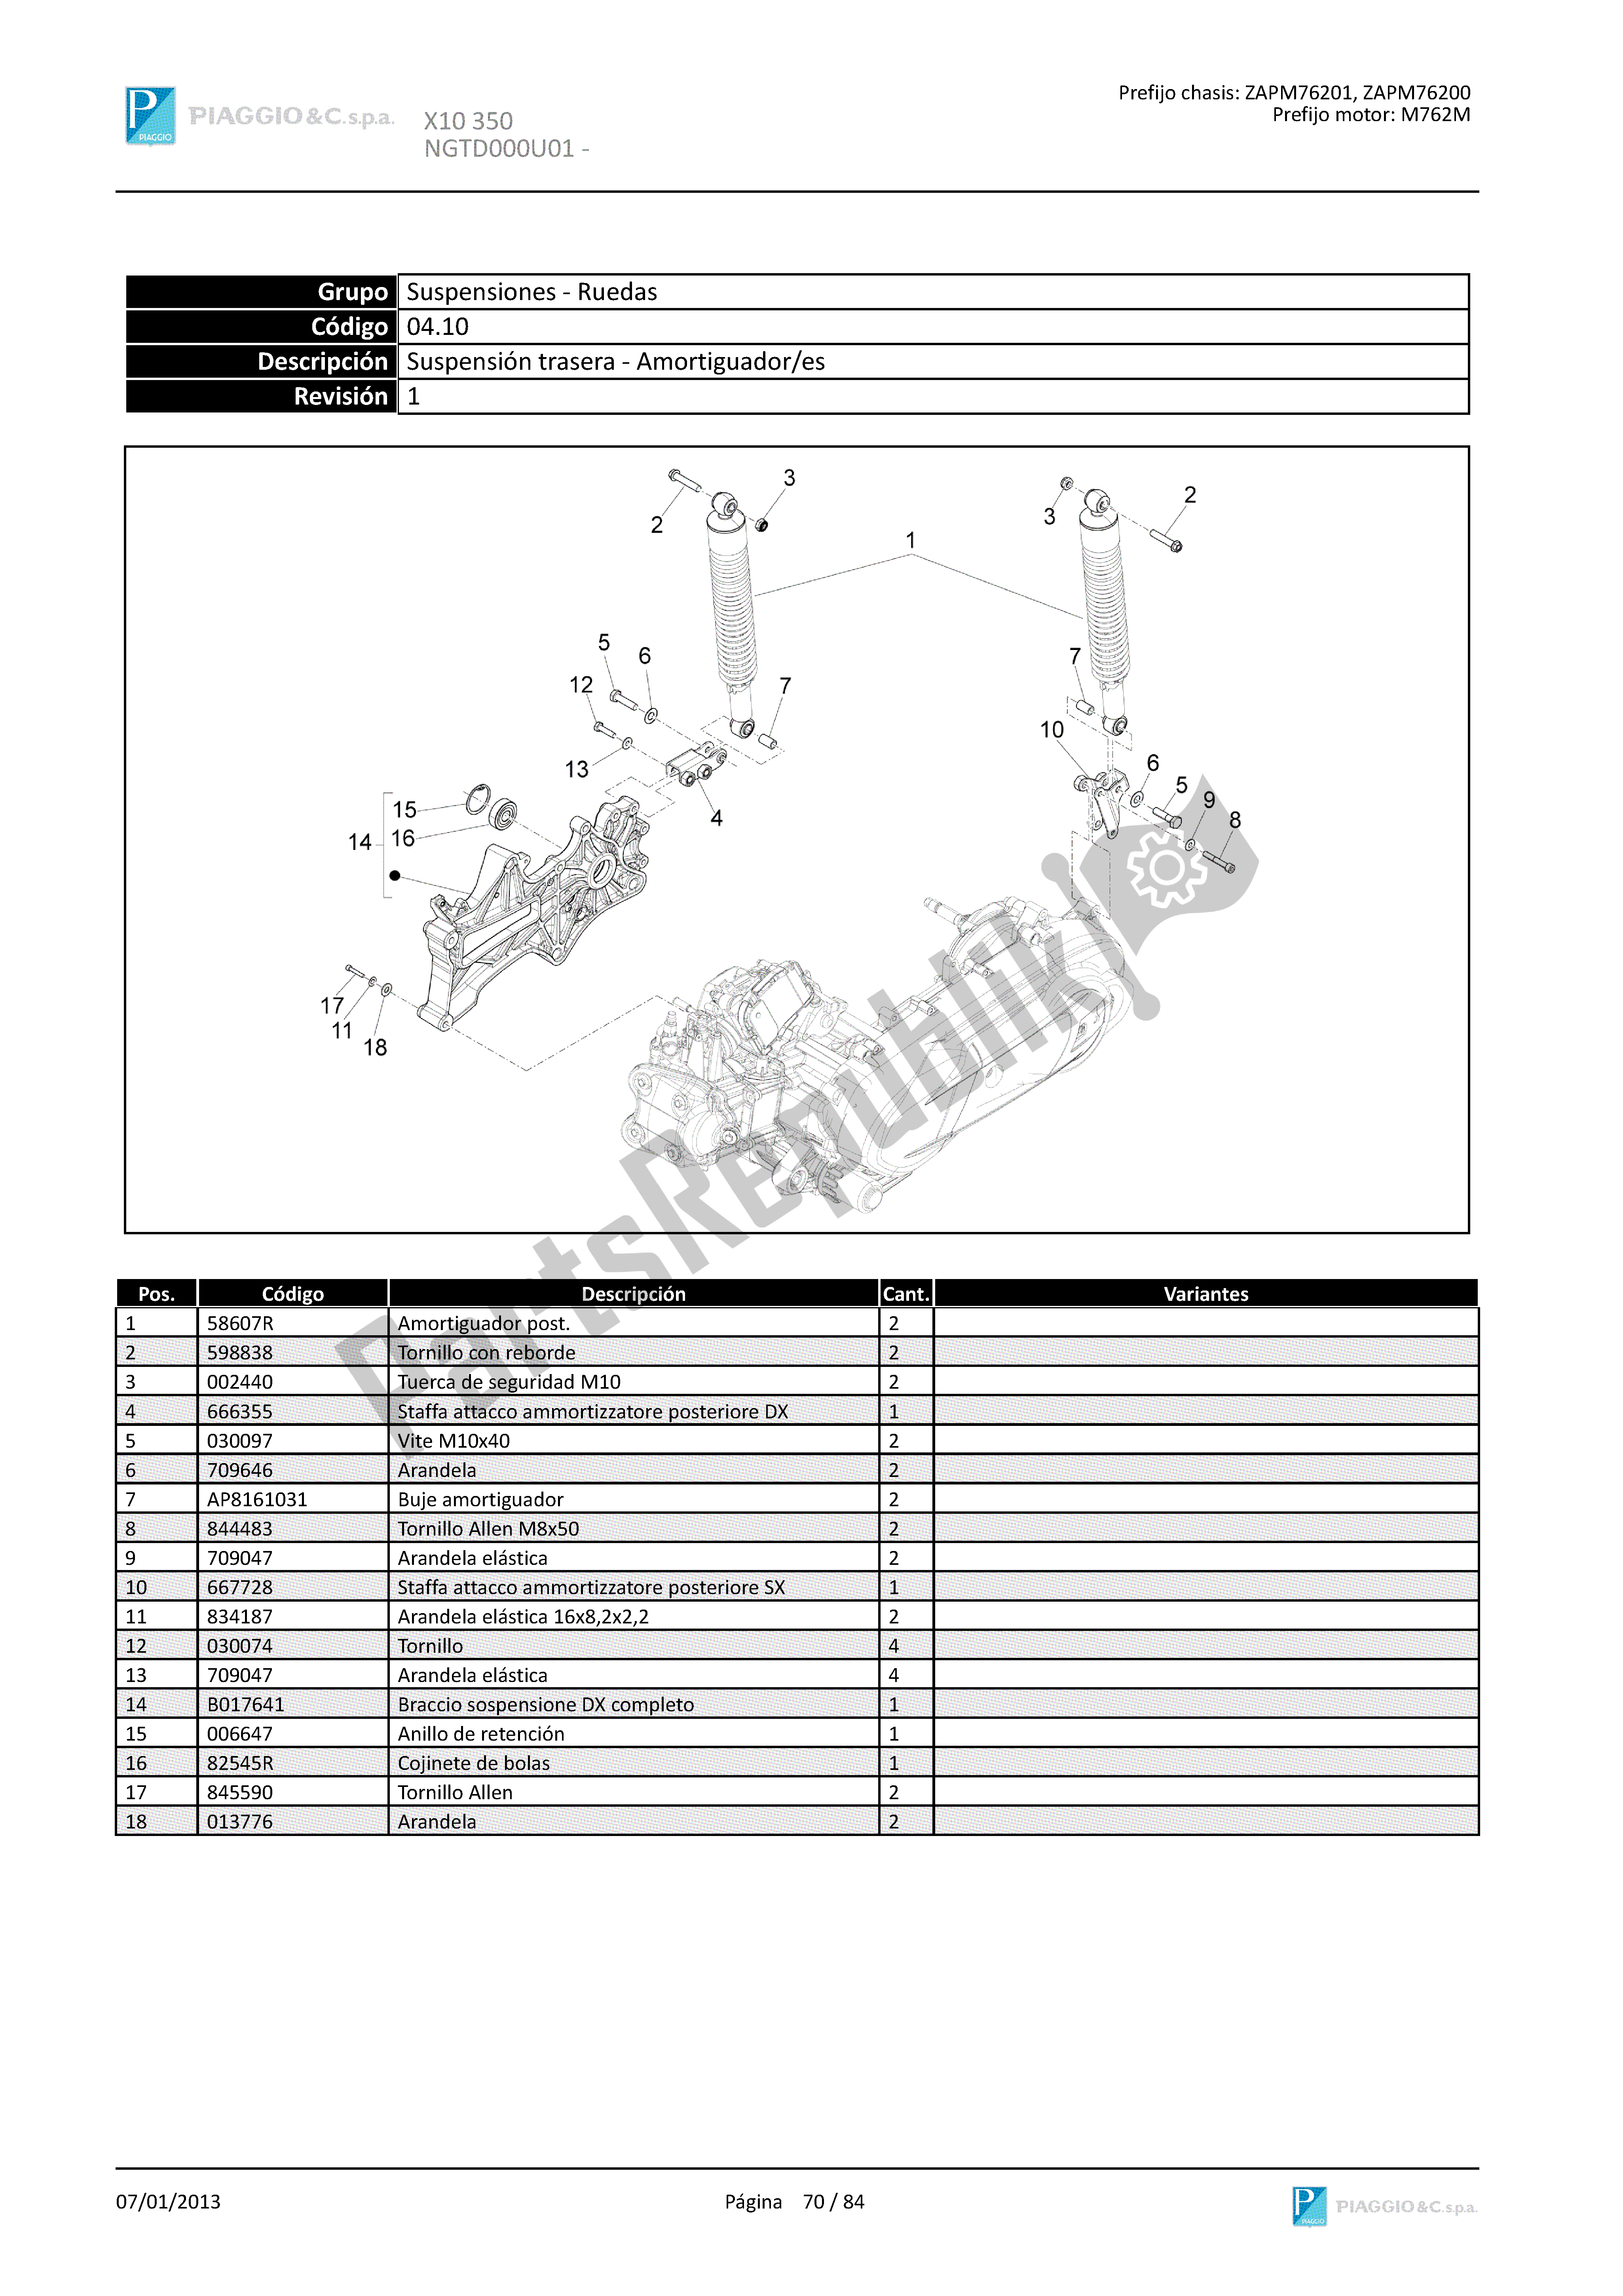 Todas las partes para Suspensión Trasera - Amortiguador/es de Piaggio X 10 350 2012 - 2013